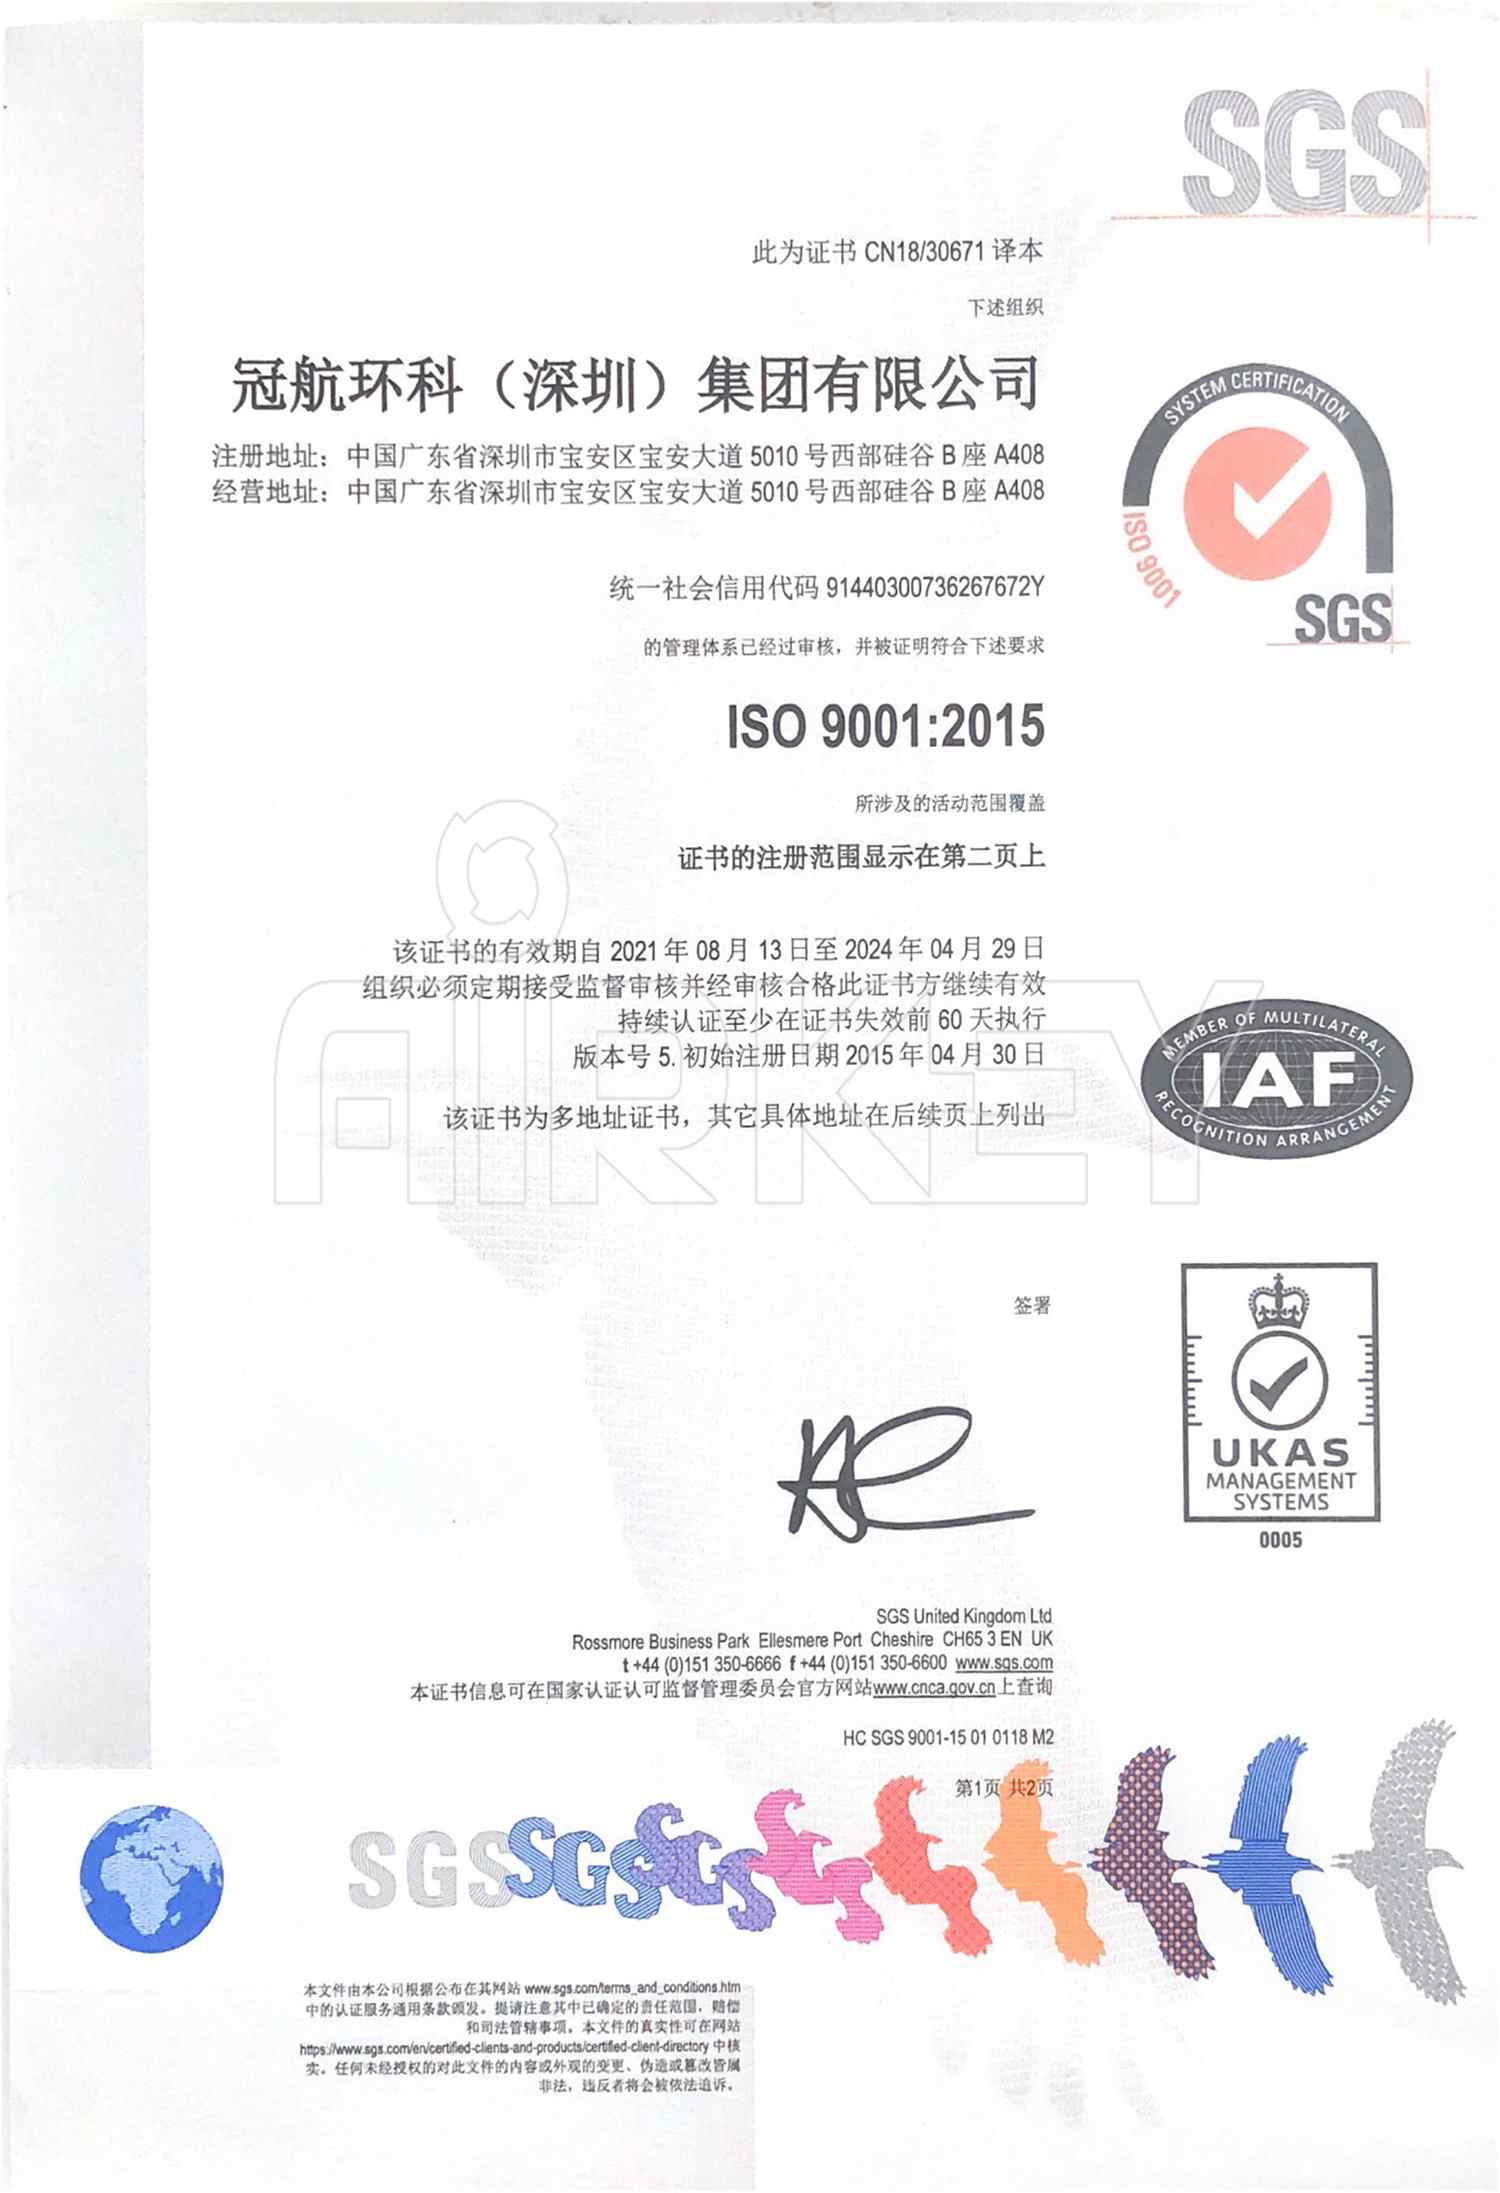 ISO9001:2015质量管理证书